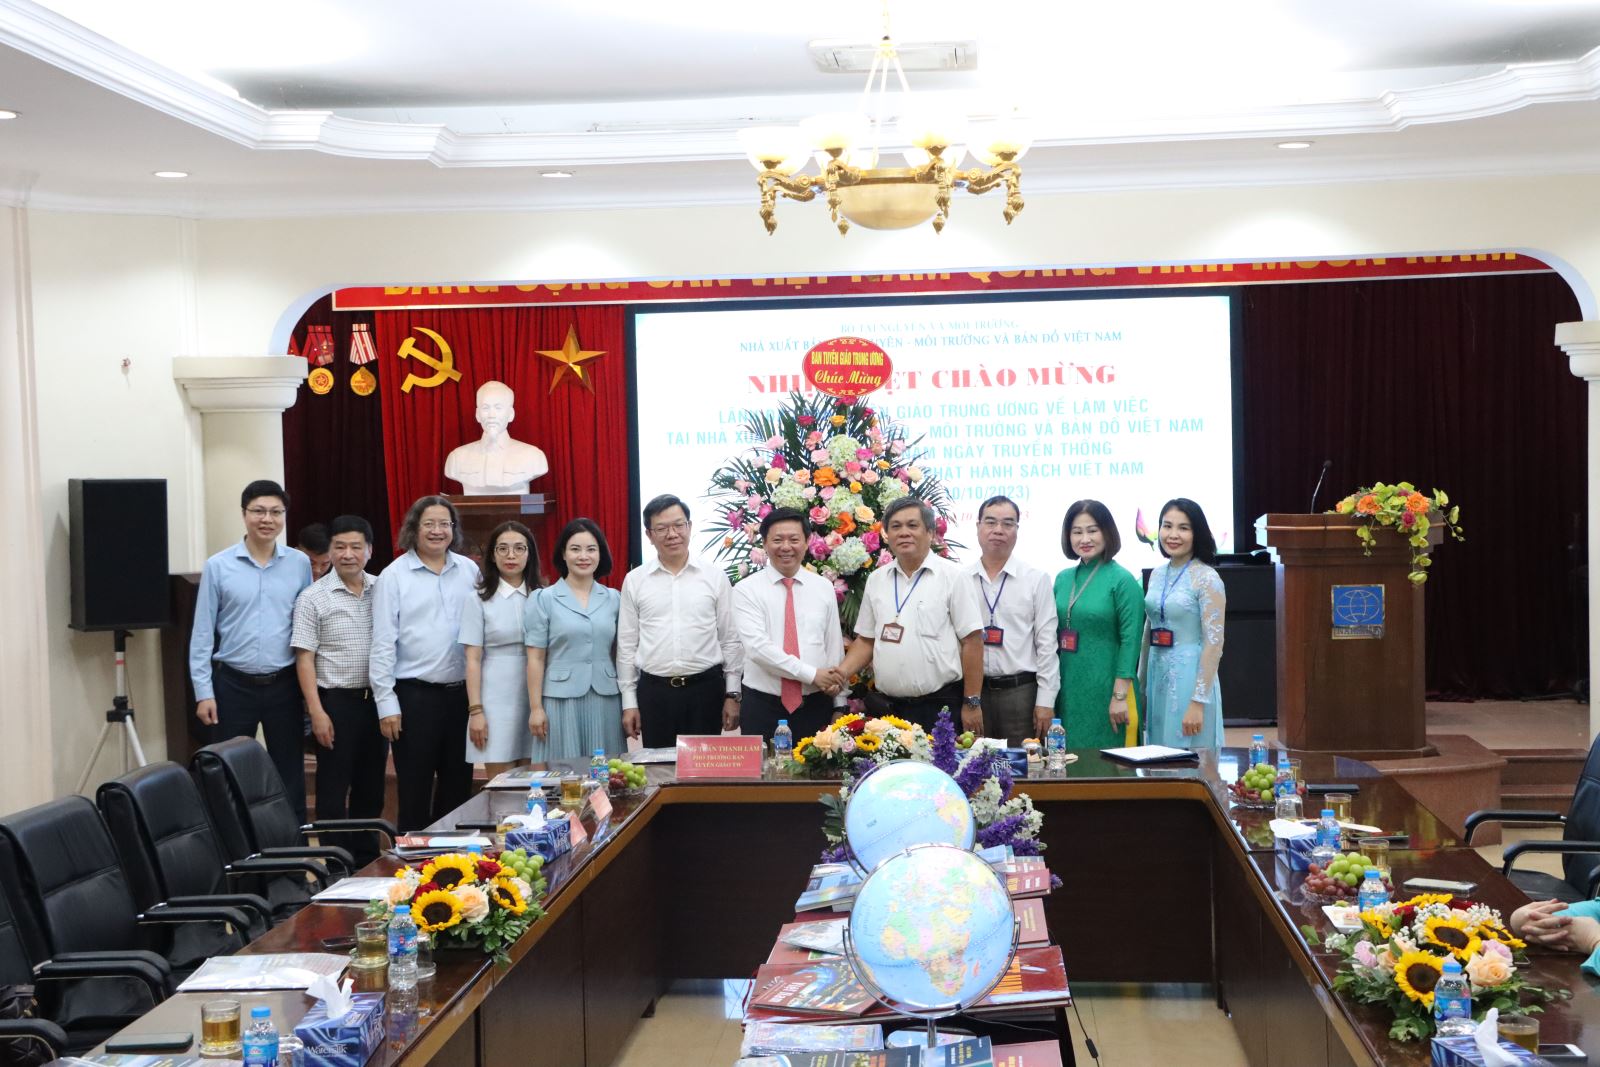 Lãnh đạo Ban Tuyên giáo Trung ương chúc mừng Nhà xuất bản nhân ngày kỉ niệm 71 năm ngày truyền thống ngành Xuất bản, In và Phát hành sách Việt Nam (10/10/1952 - 10/10/2023)